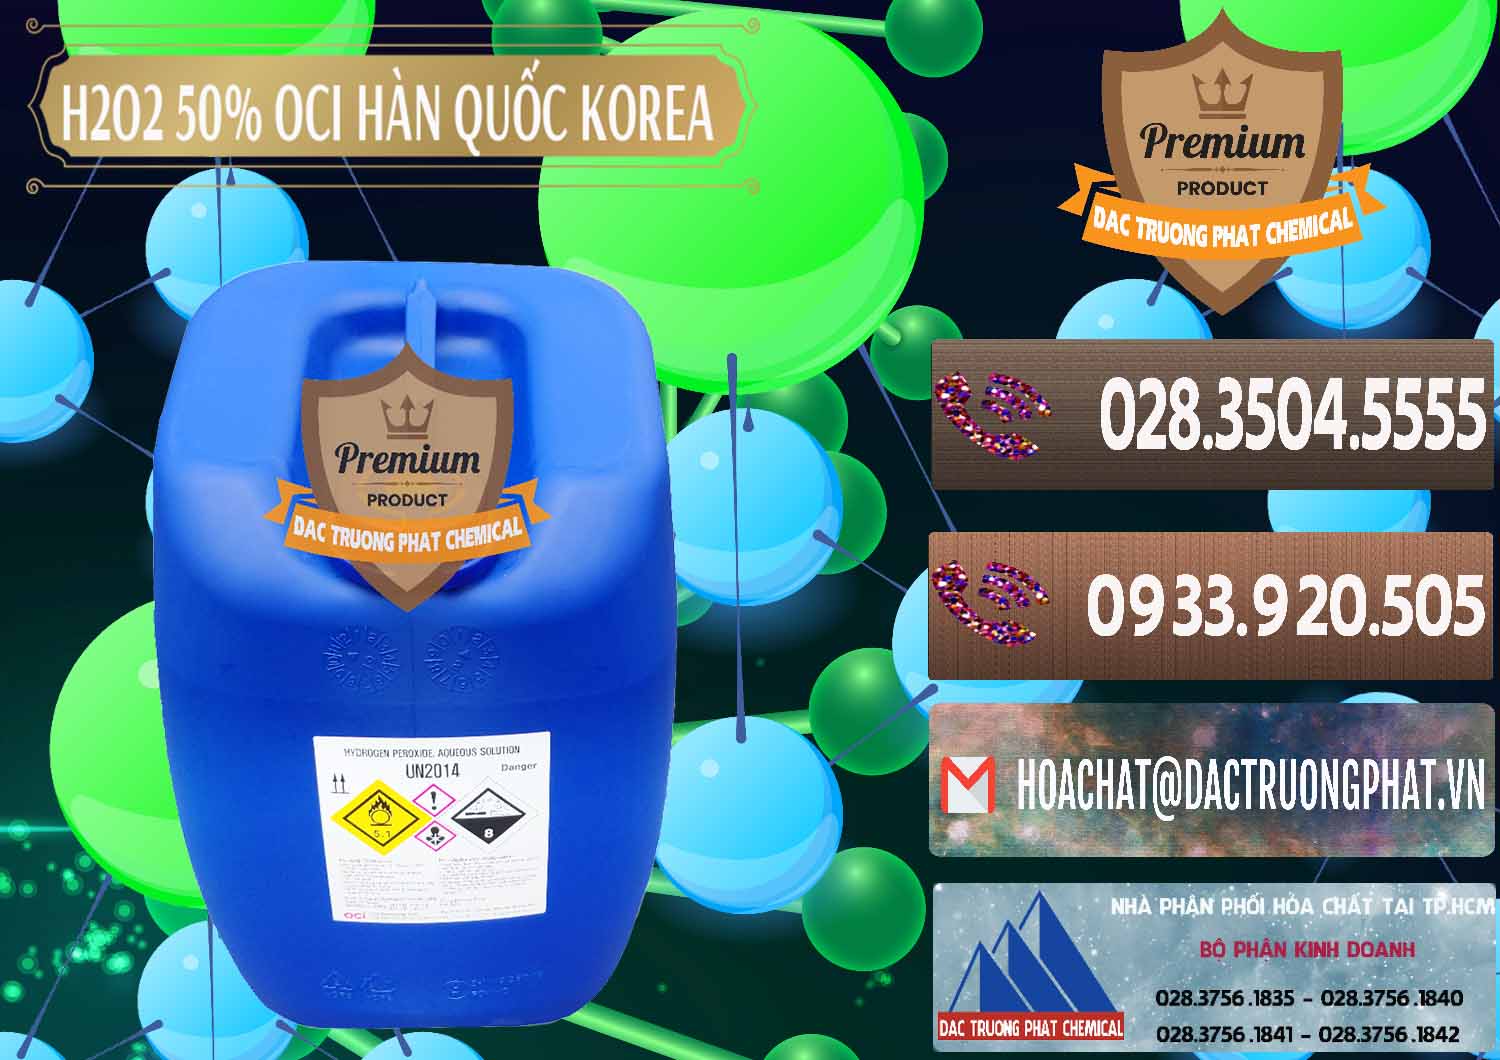 Nơi chuyên cung cấp _ bán H2O2 - Hydrogen Peroxide 50% OCI Hàn Quốc Korea - 0075 - Công ty kinh doanh ( cung cấp ) hóa chất tại TP.HCM - hoachatviet.net